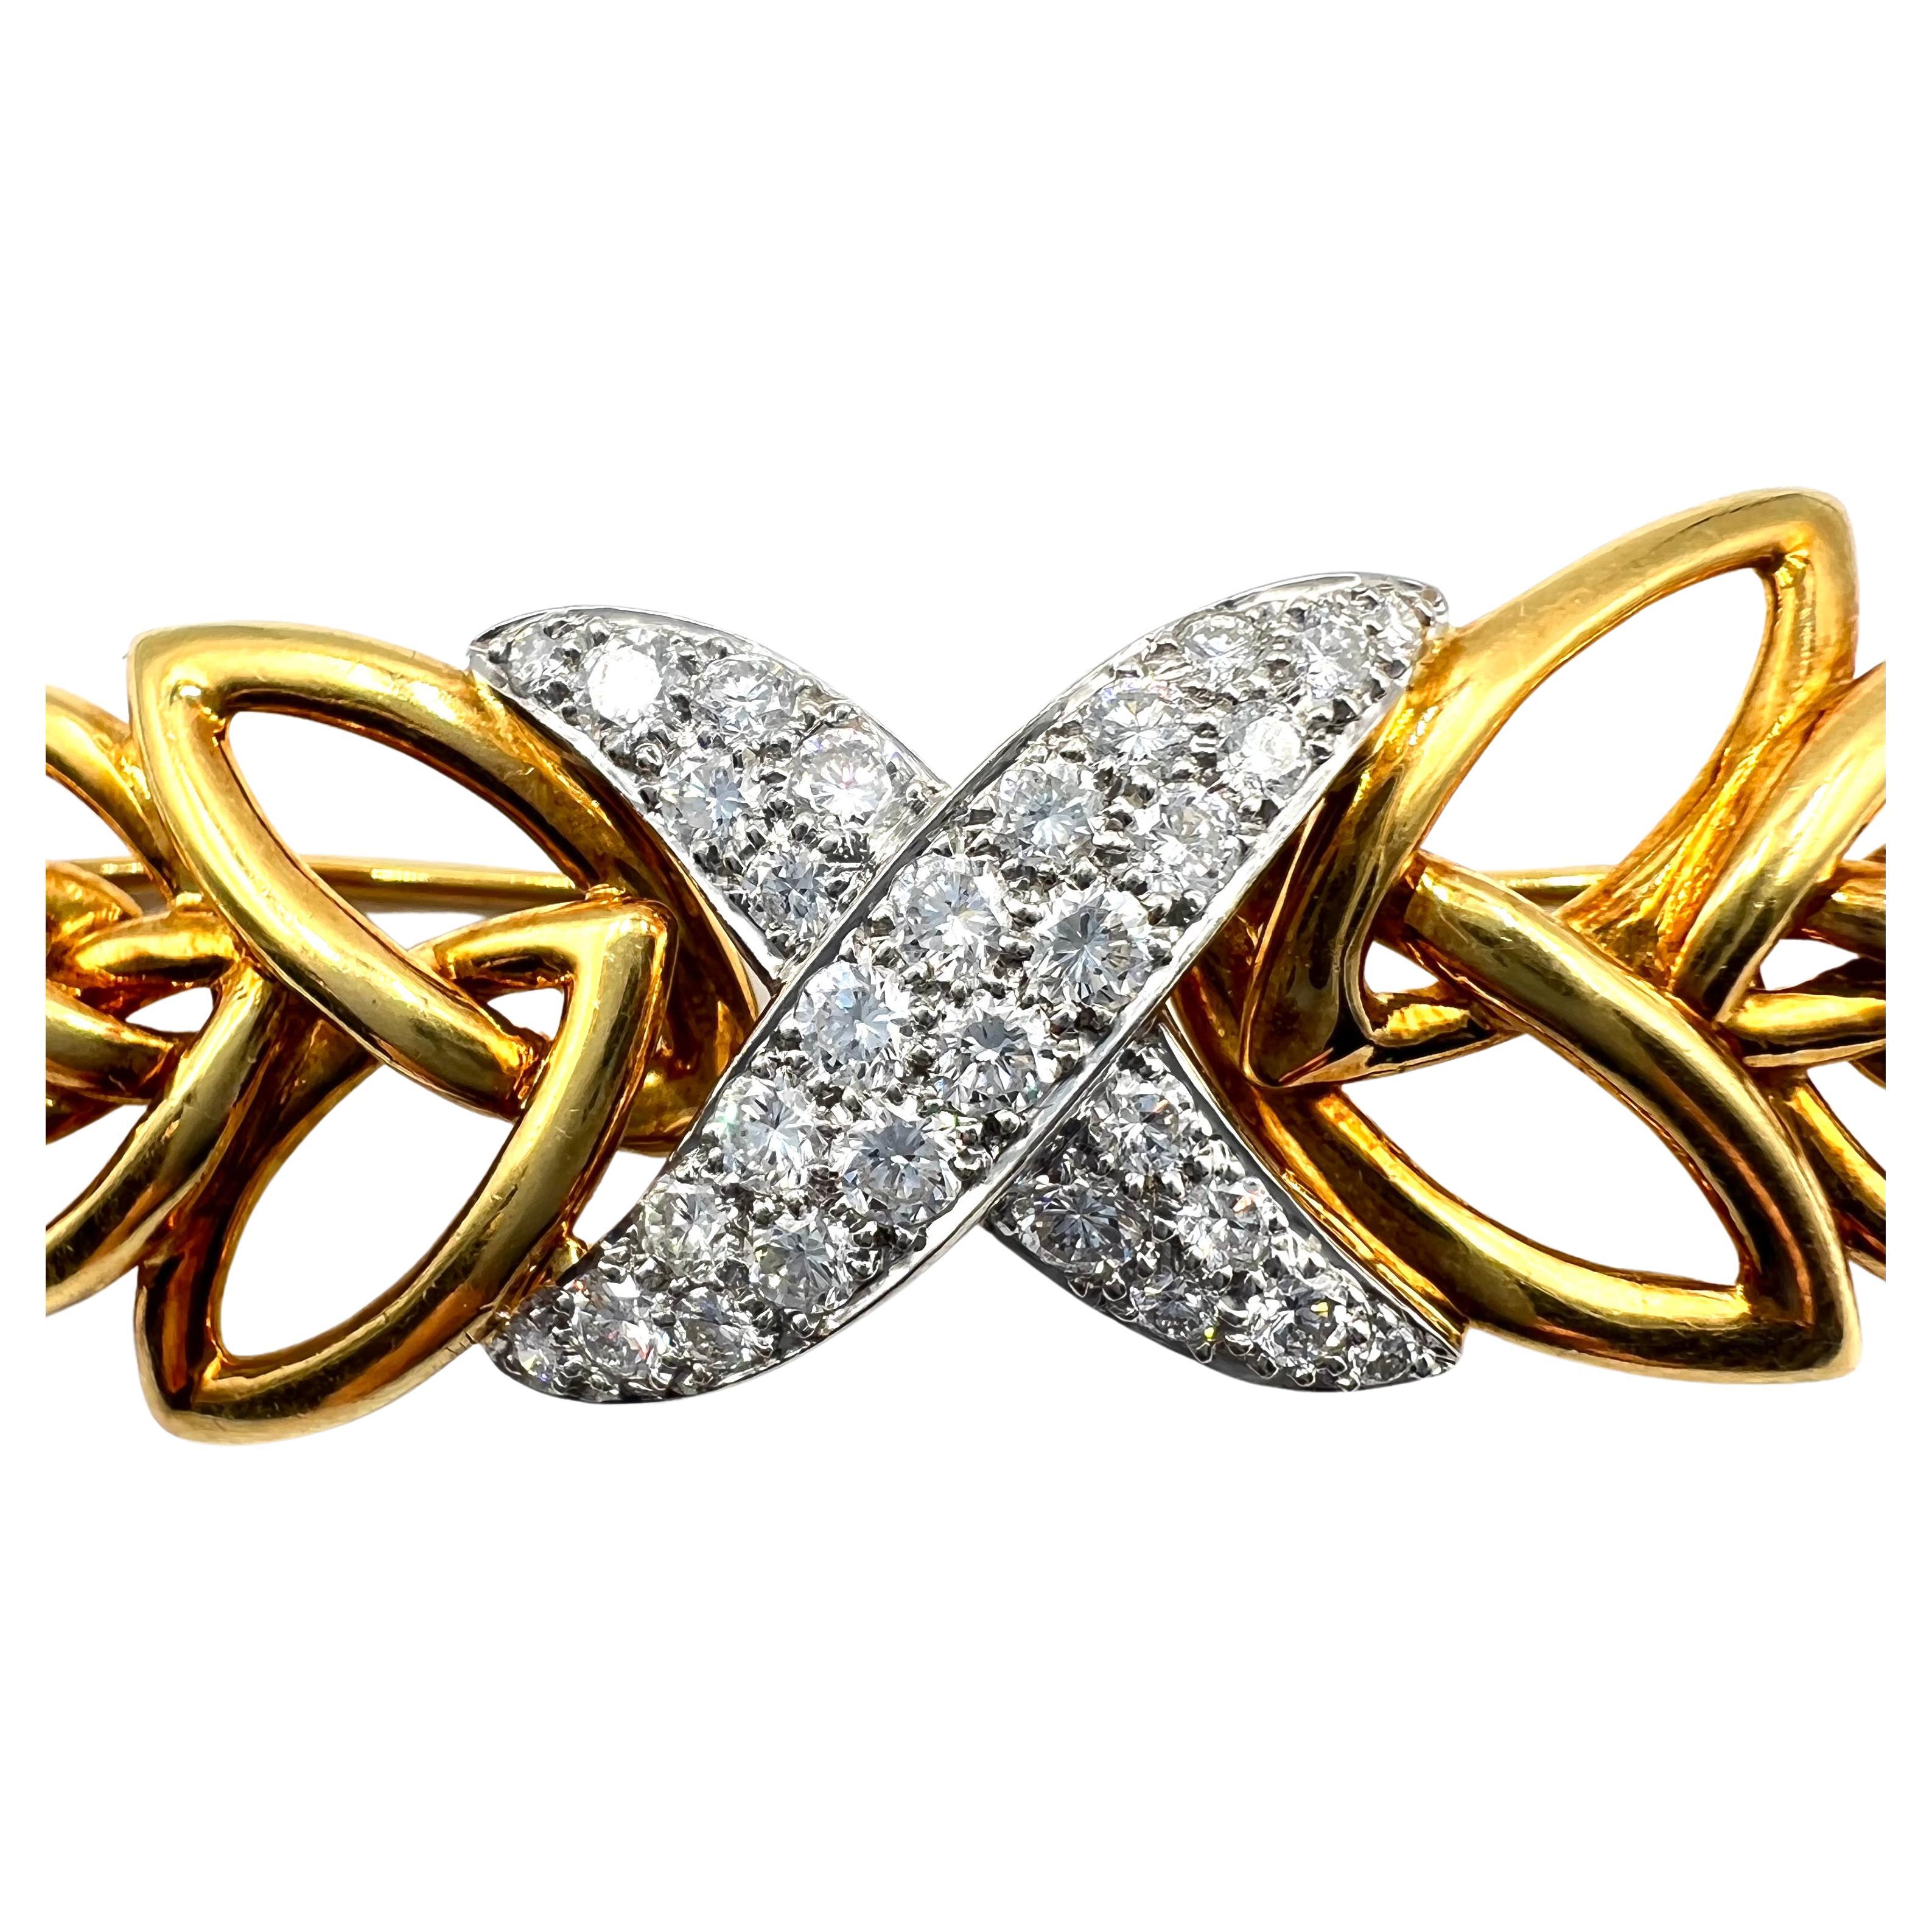 Épingle en or jaune 18 carats de Tiffany & Co. à motif de feuilles ouvertes et courbes, avec un motif central en forme de 'X' emblématique de Tiffany en platine, serti de trente diamants ronds de taille brillant totalisant environ 1,25ct. 2,75